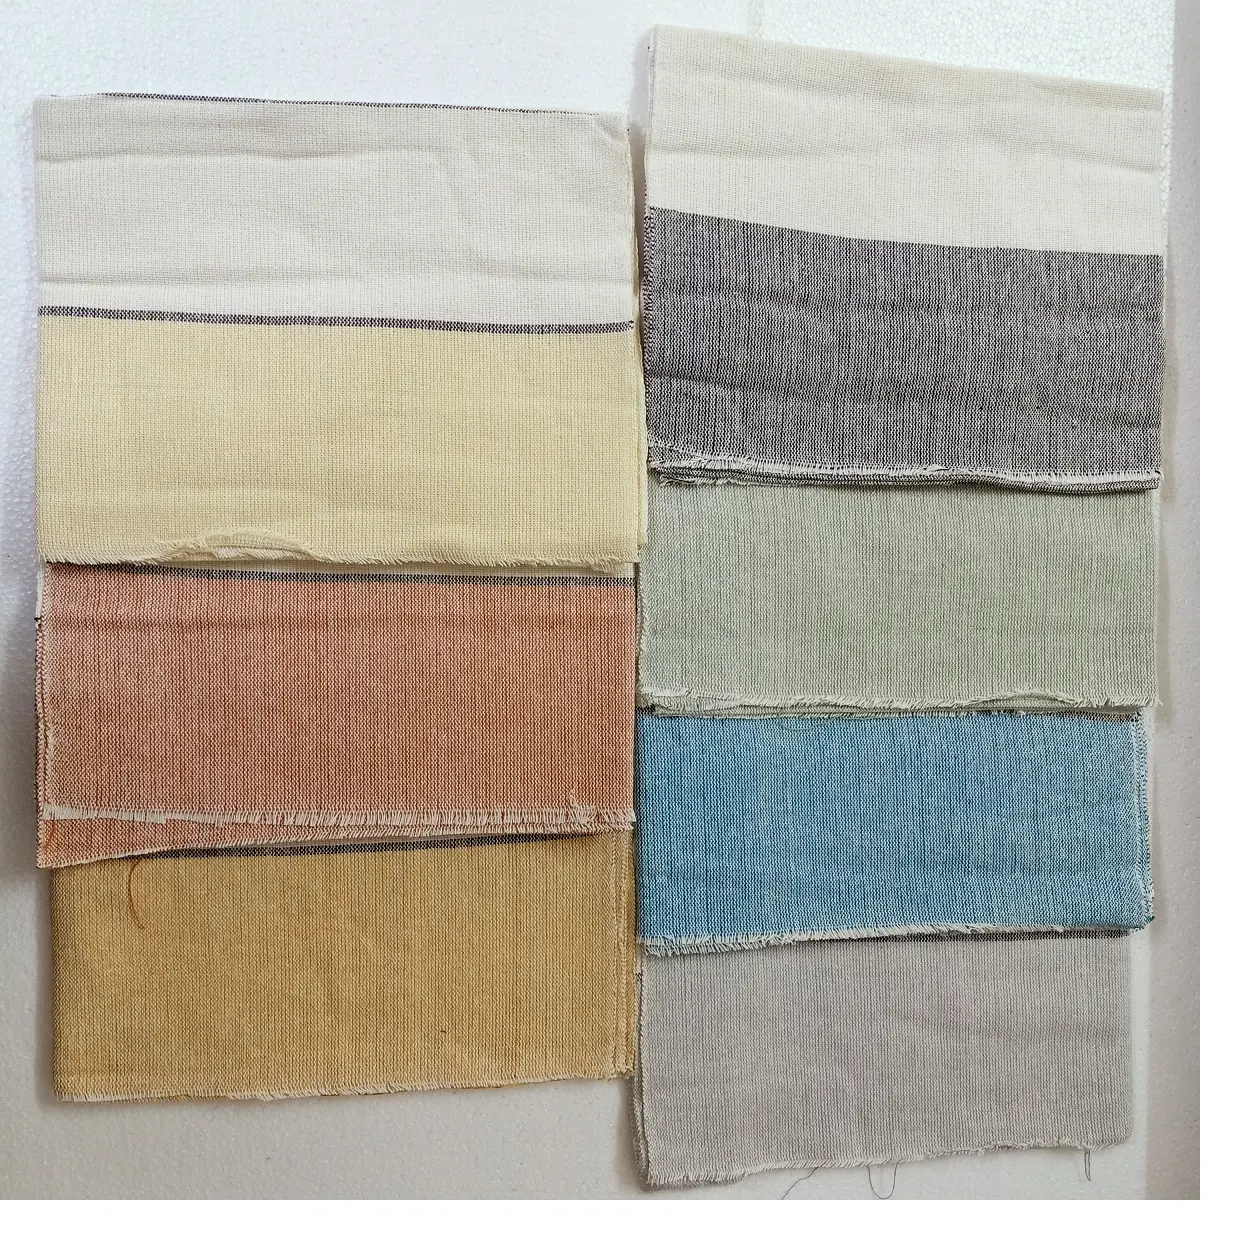 Asciugamani di cotone lavorati a mano su misura in colori assortiti realizzati per la rivendita da negozi tessili per la casa